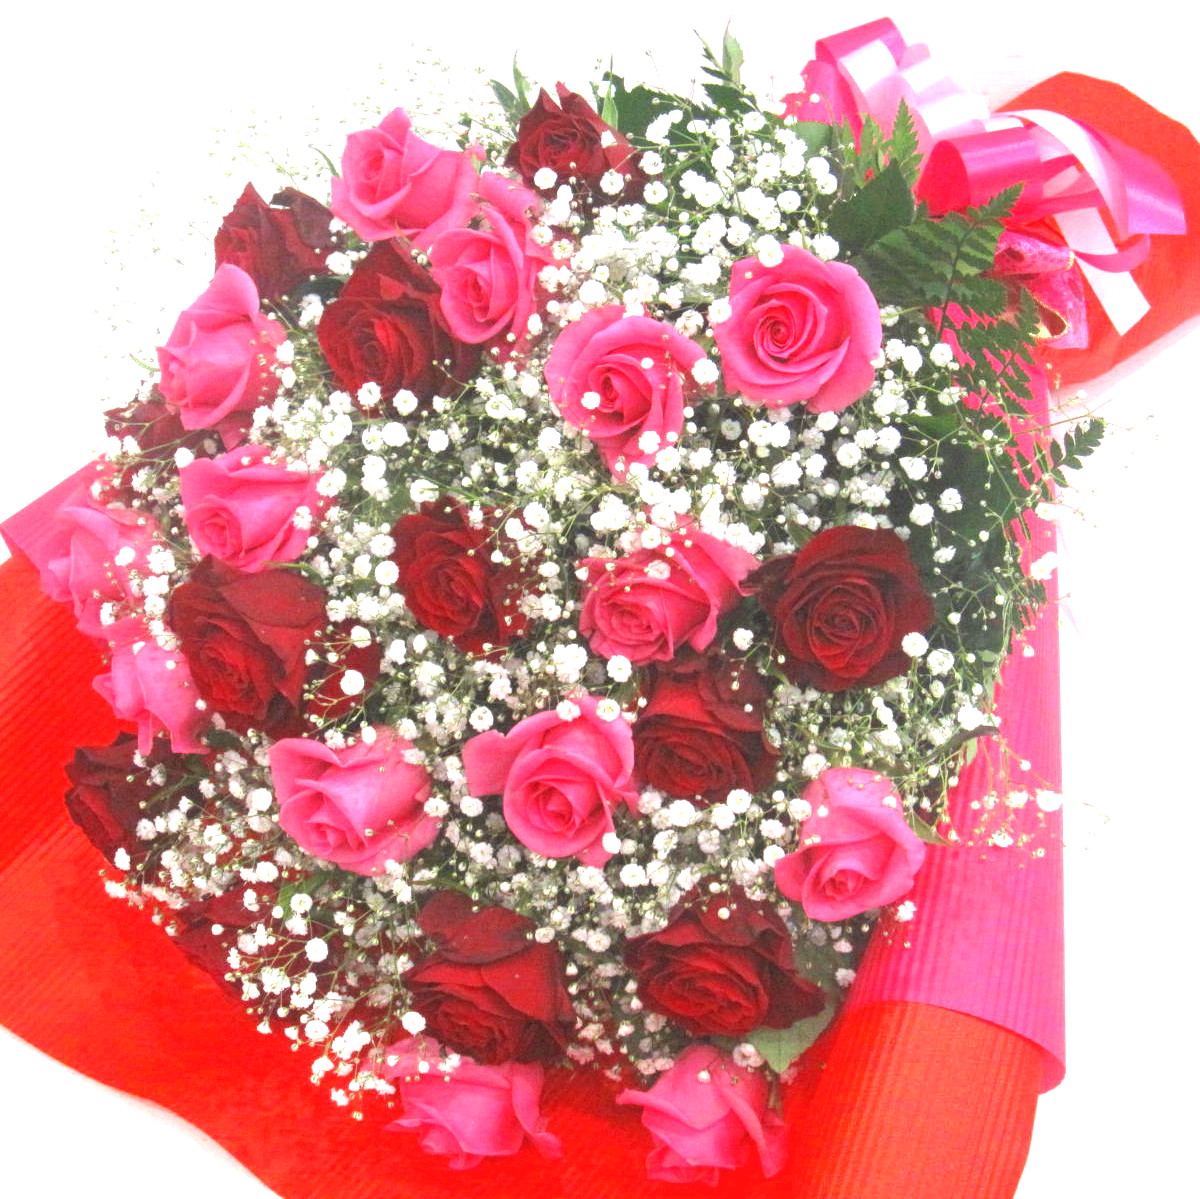 厳選 赤いバラとピンクバラとかすみ草の華やか花束 商品詳細